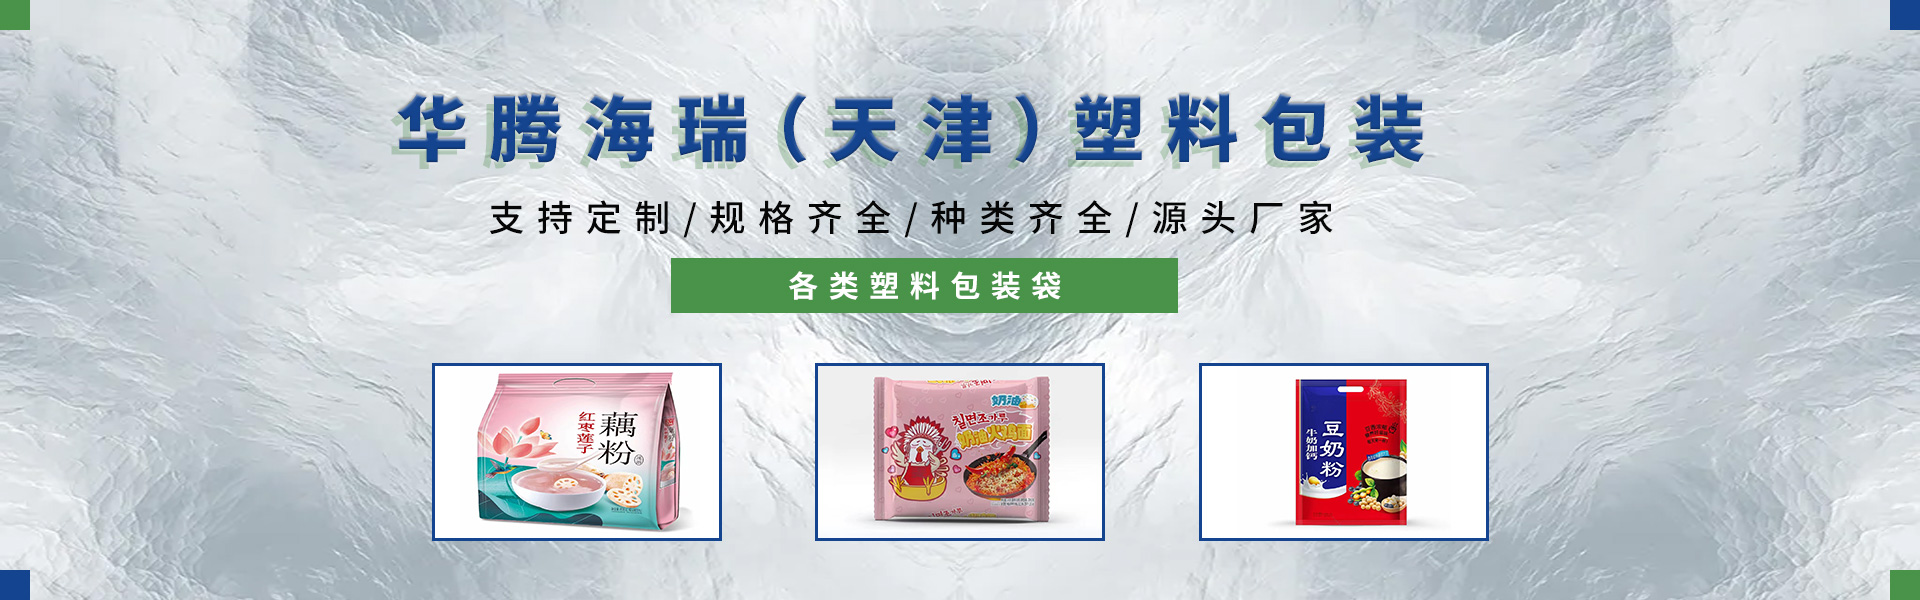 华腾海瑞(天津)塑料包装制品有限公司